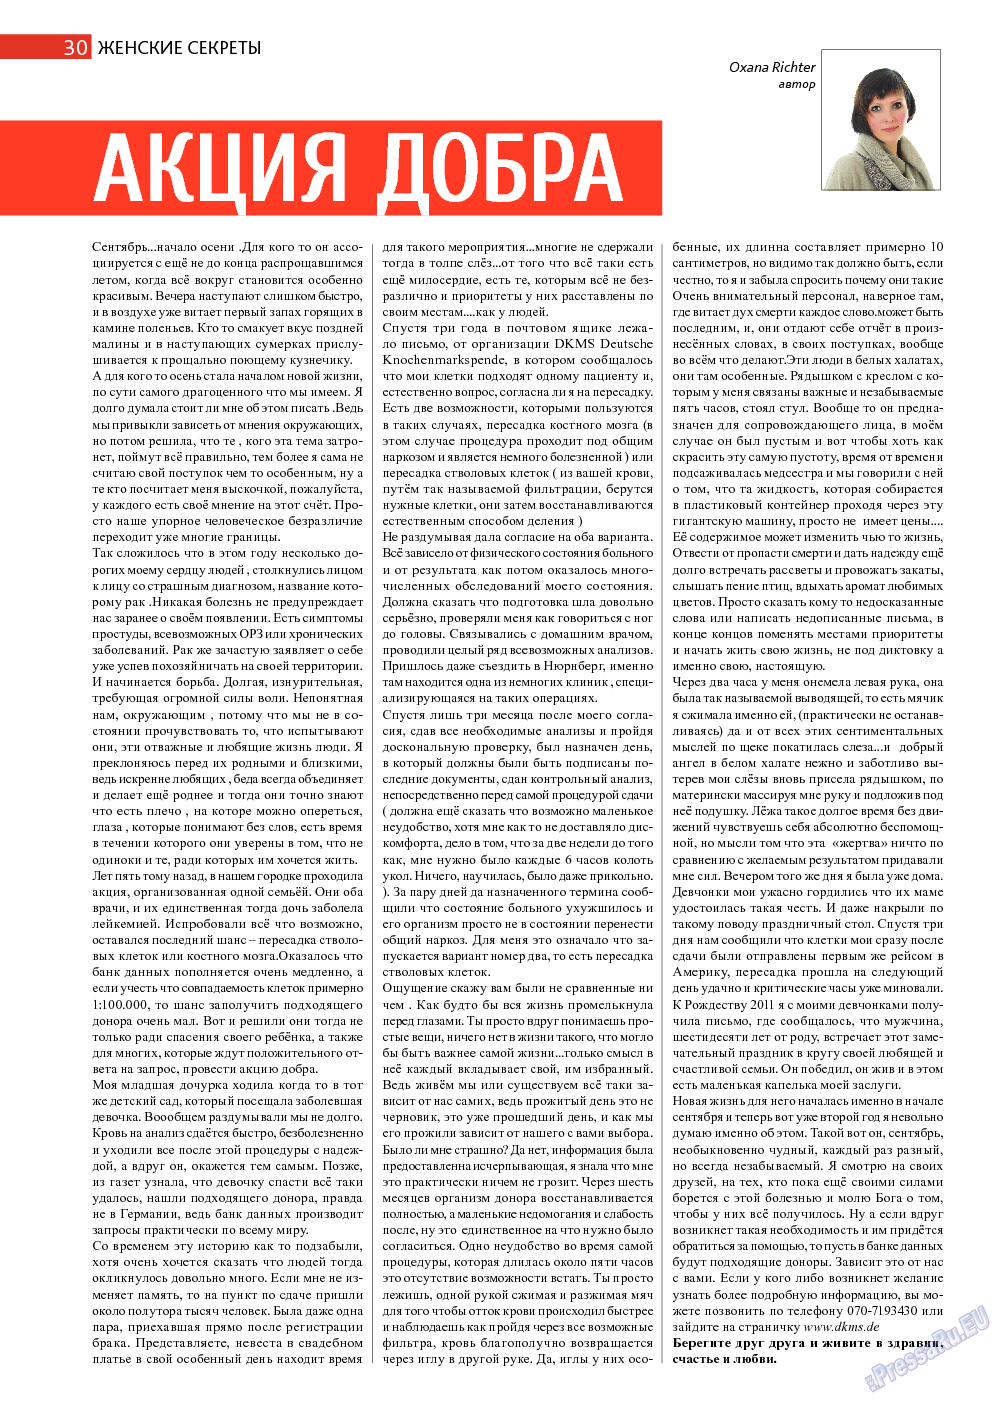 Афиша Augsburg (журнал). 2013 год, номер 9, стр. 30